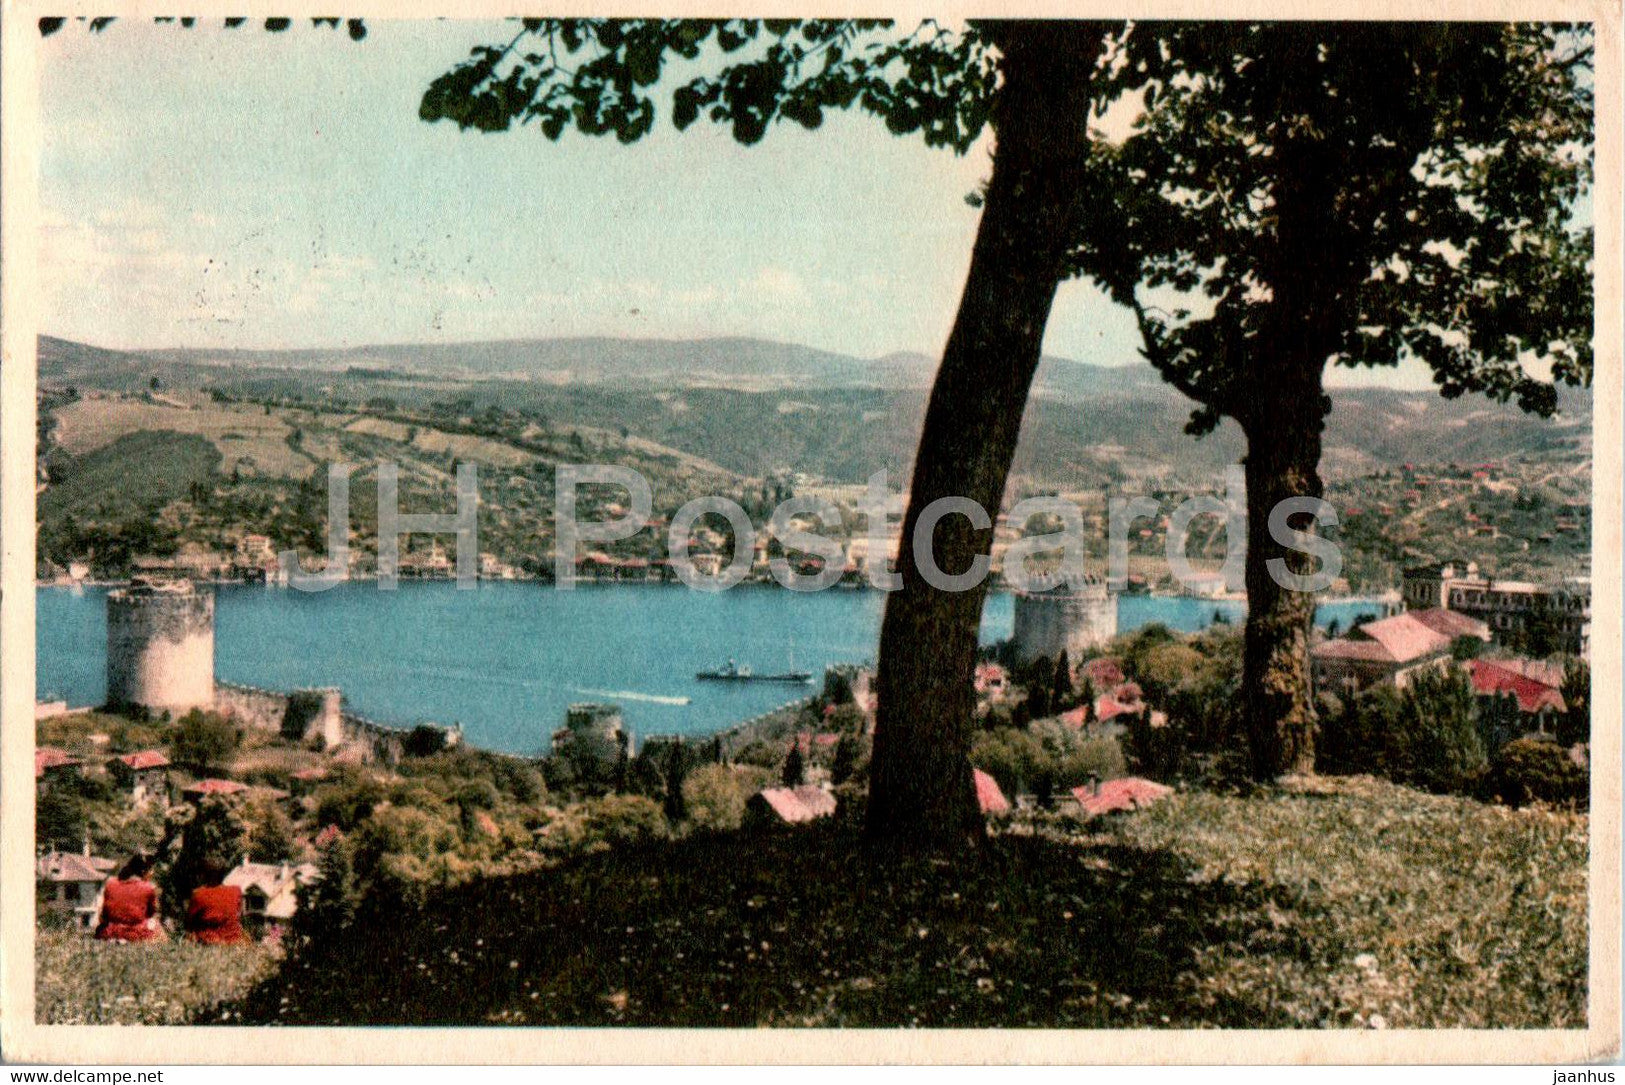 Istanbul - Rumeli Hisar Towers on the Bosphore - old postcard - 1959 - Turkey - used - JH Postcards